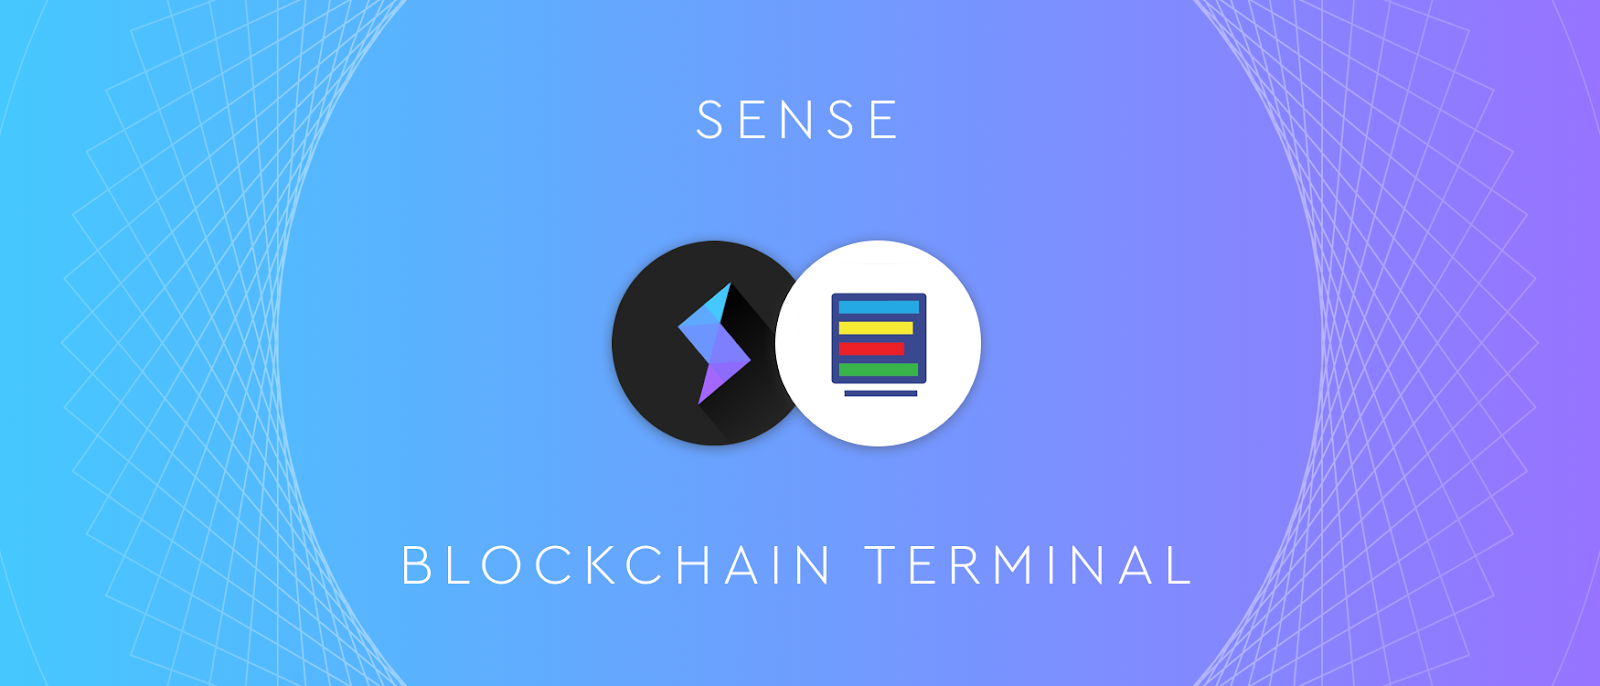 sense blockchain